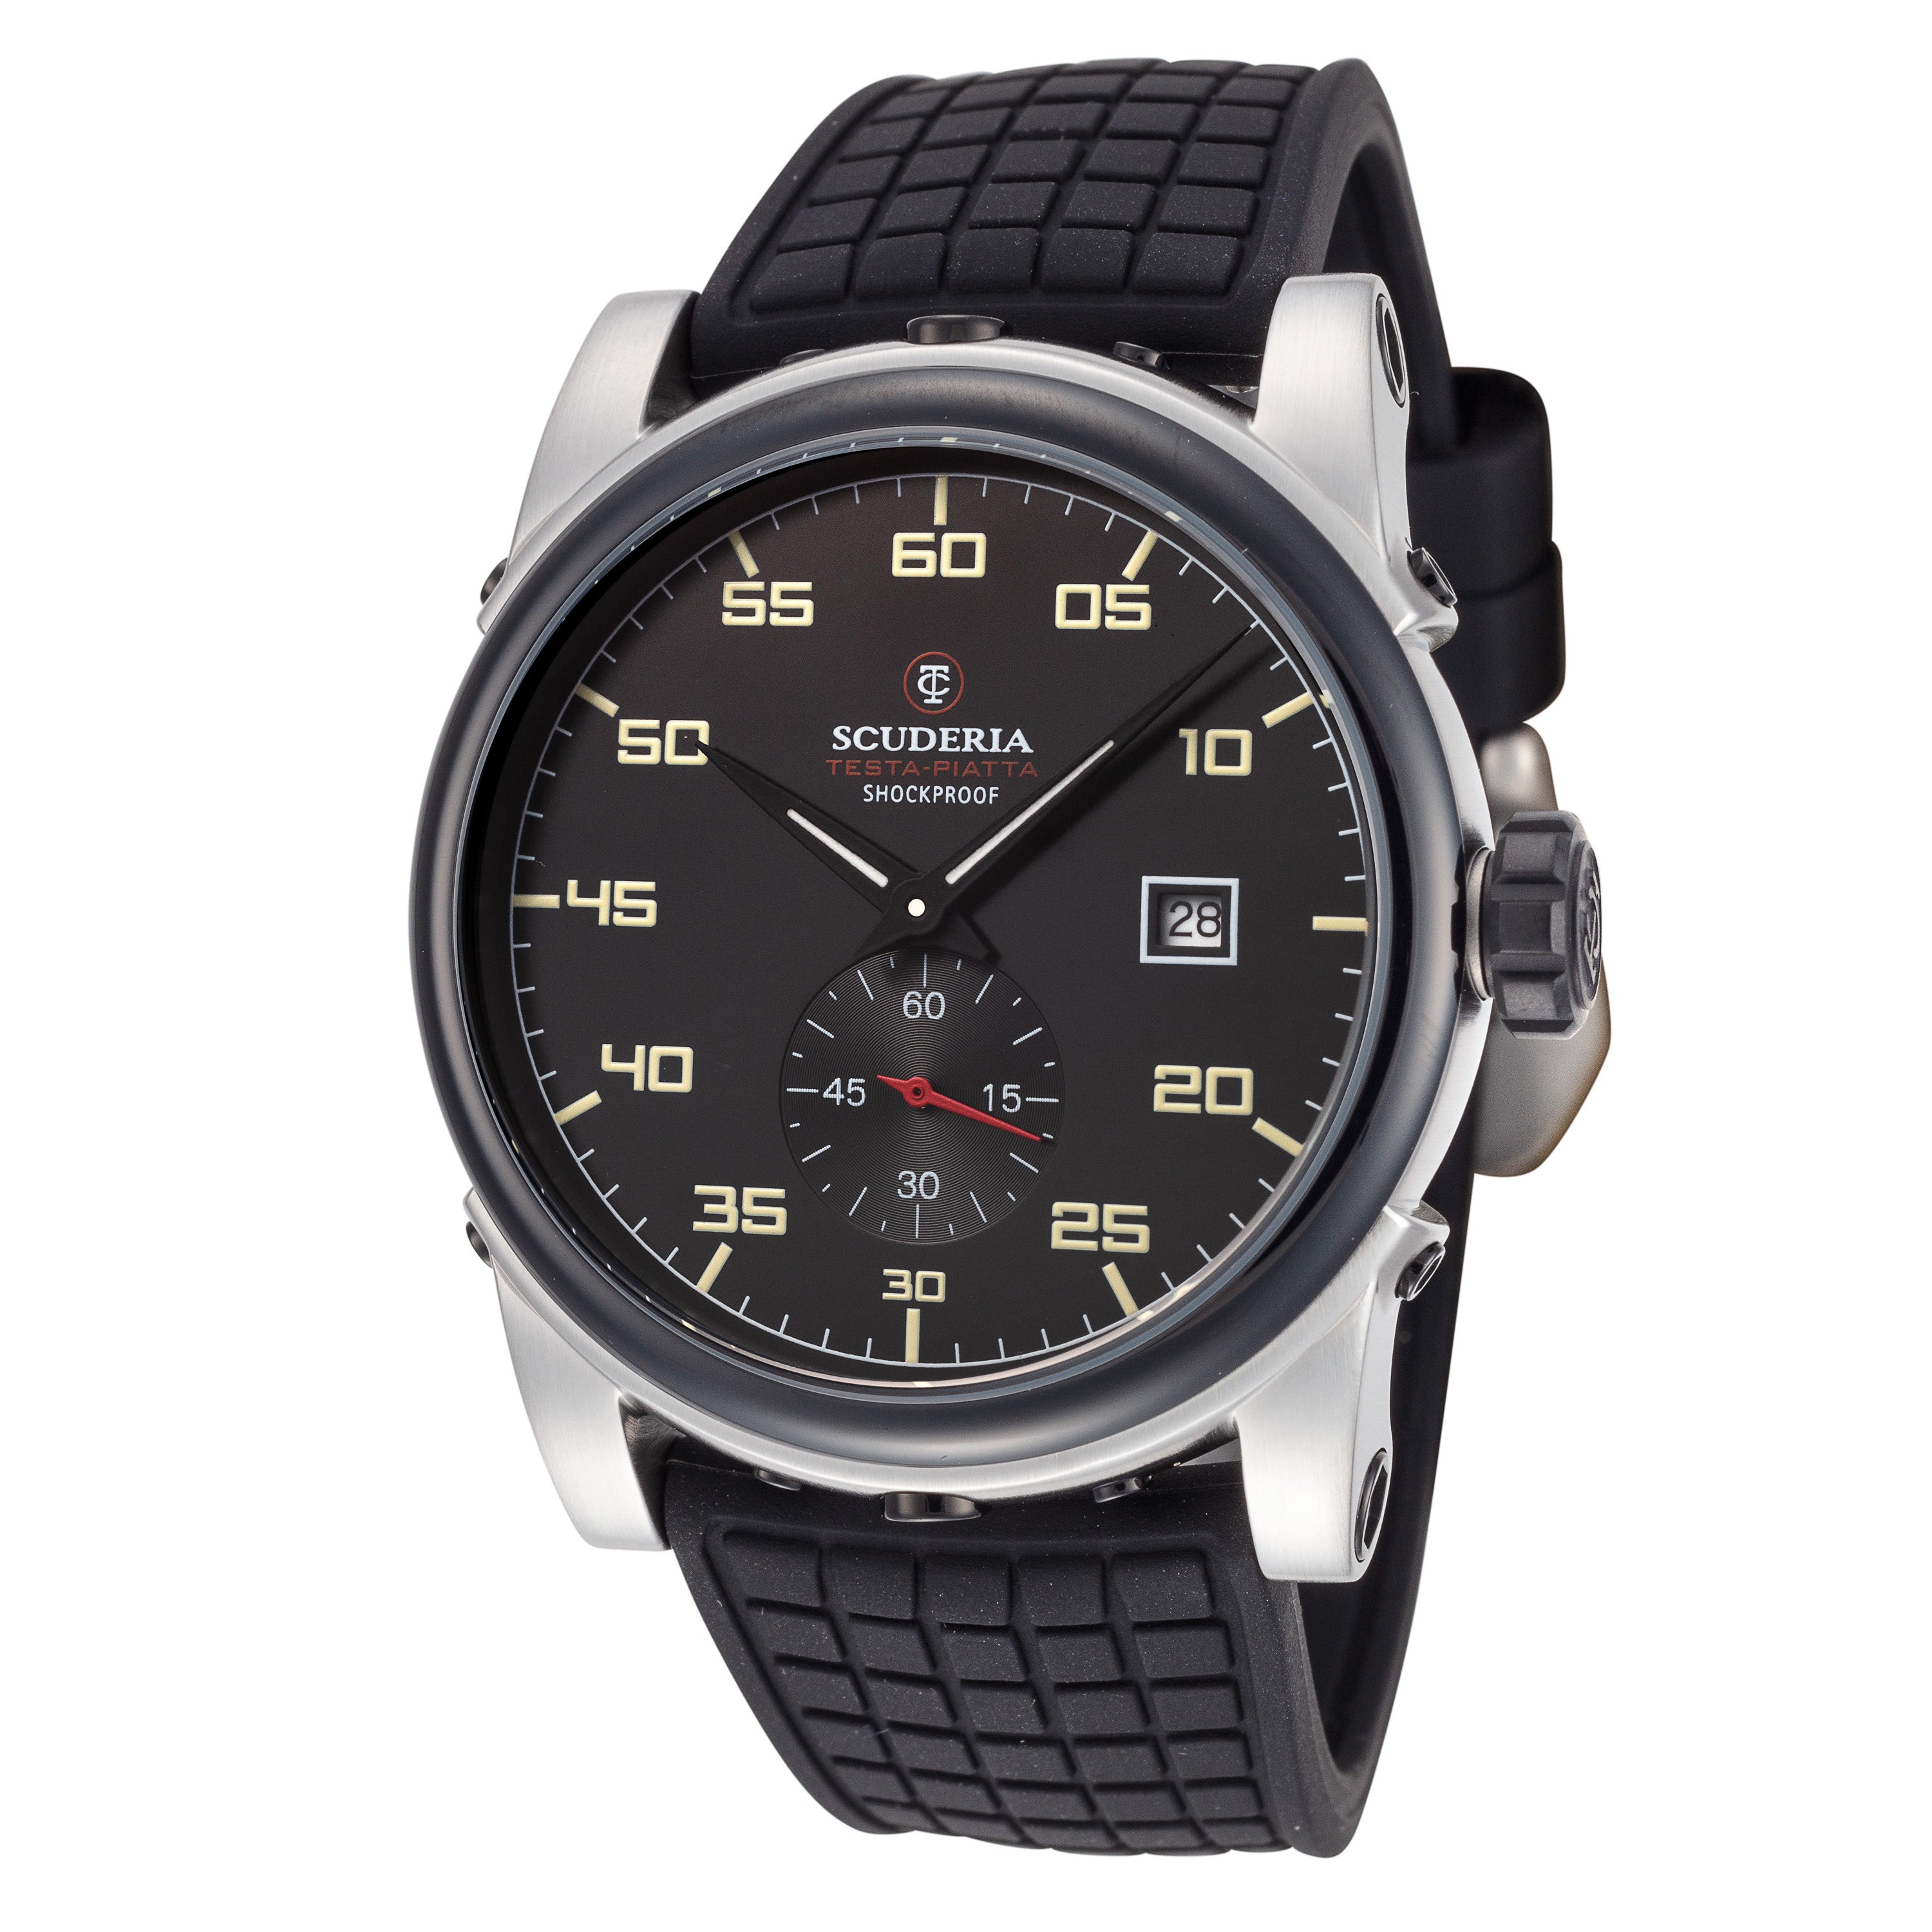 title:CT Scuderia Men's CT-245-P Testa Piatta 42mm Automatic Watch;color:Black